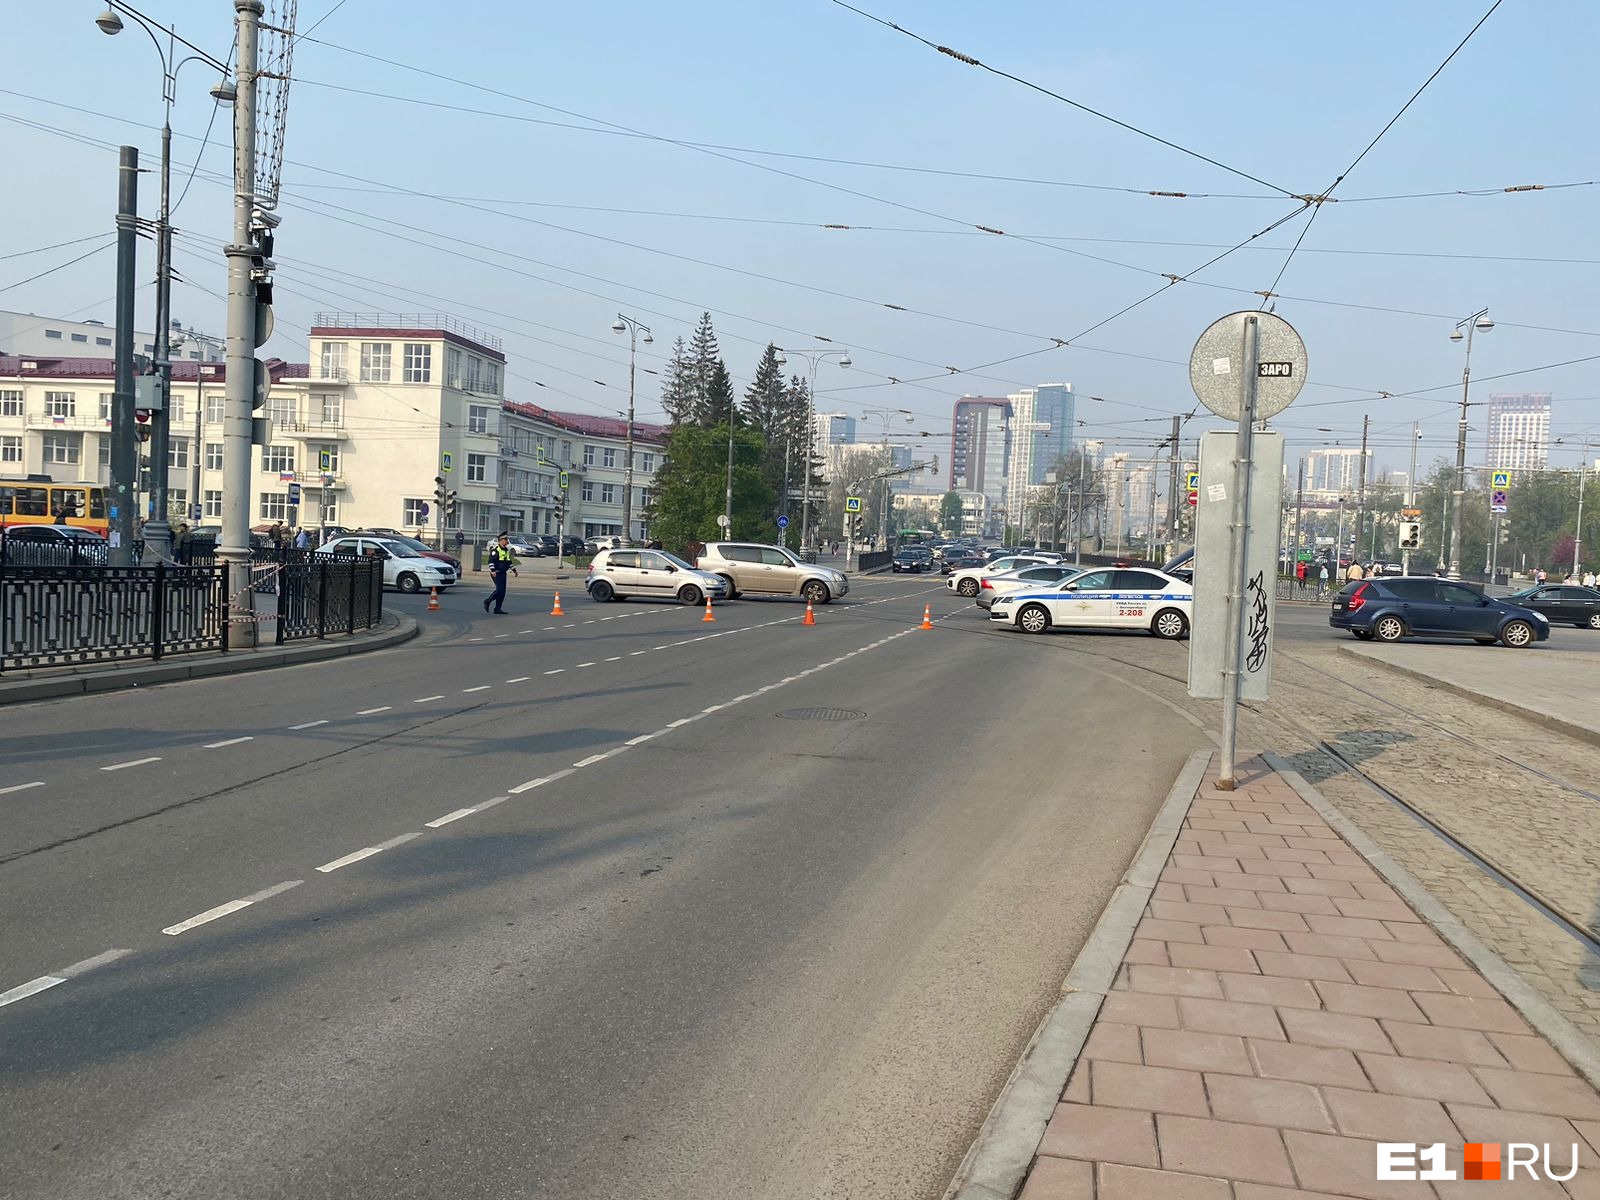 Подстава в час пик: в Екатеринбурге внезапно перекрыли проспект Ленина